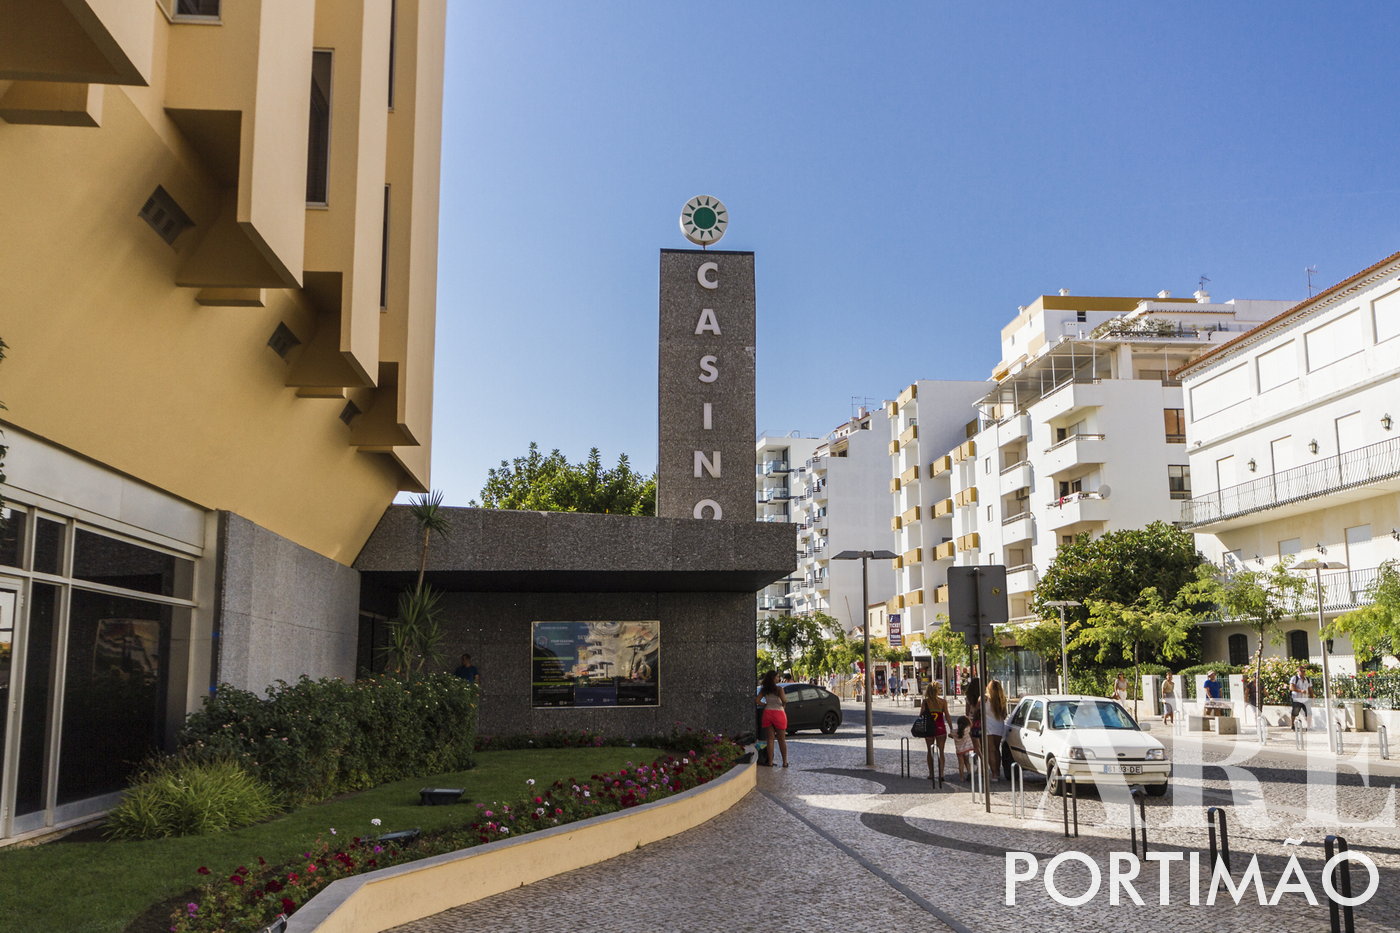 Portimão Casino Entrance